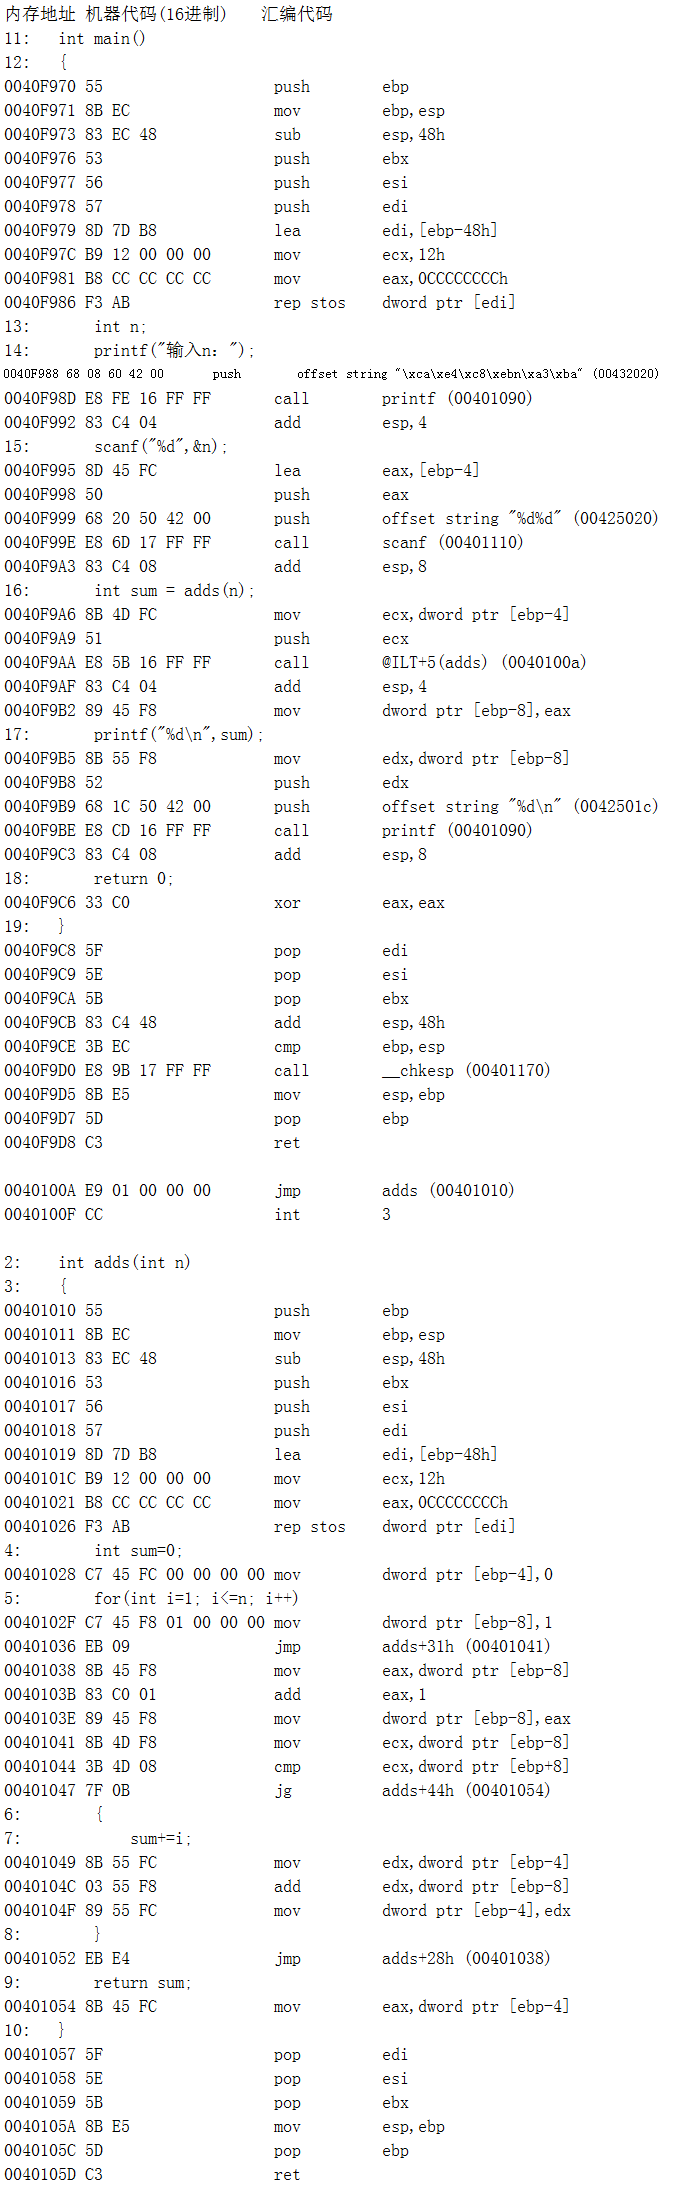 计算机系统指令的机器码表示方法及8086的寻址方式和指令系统